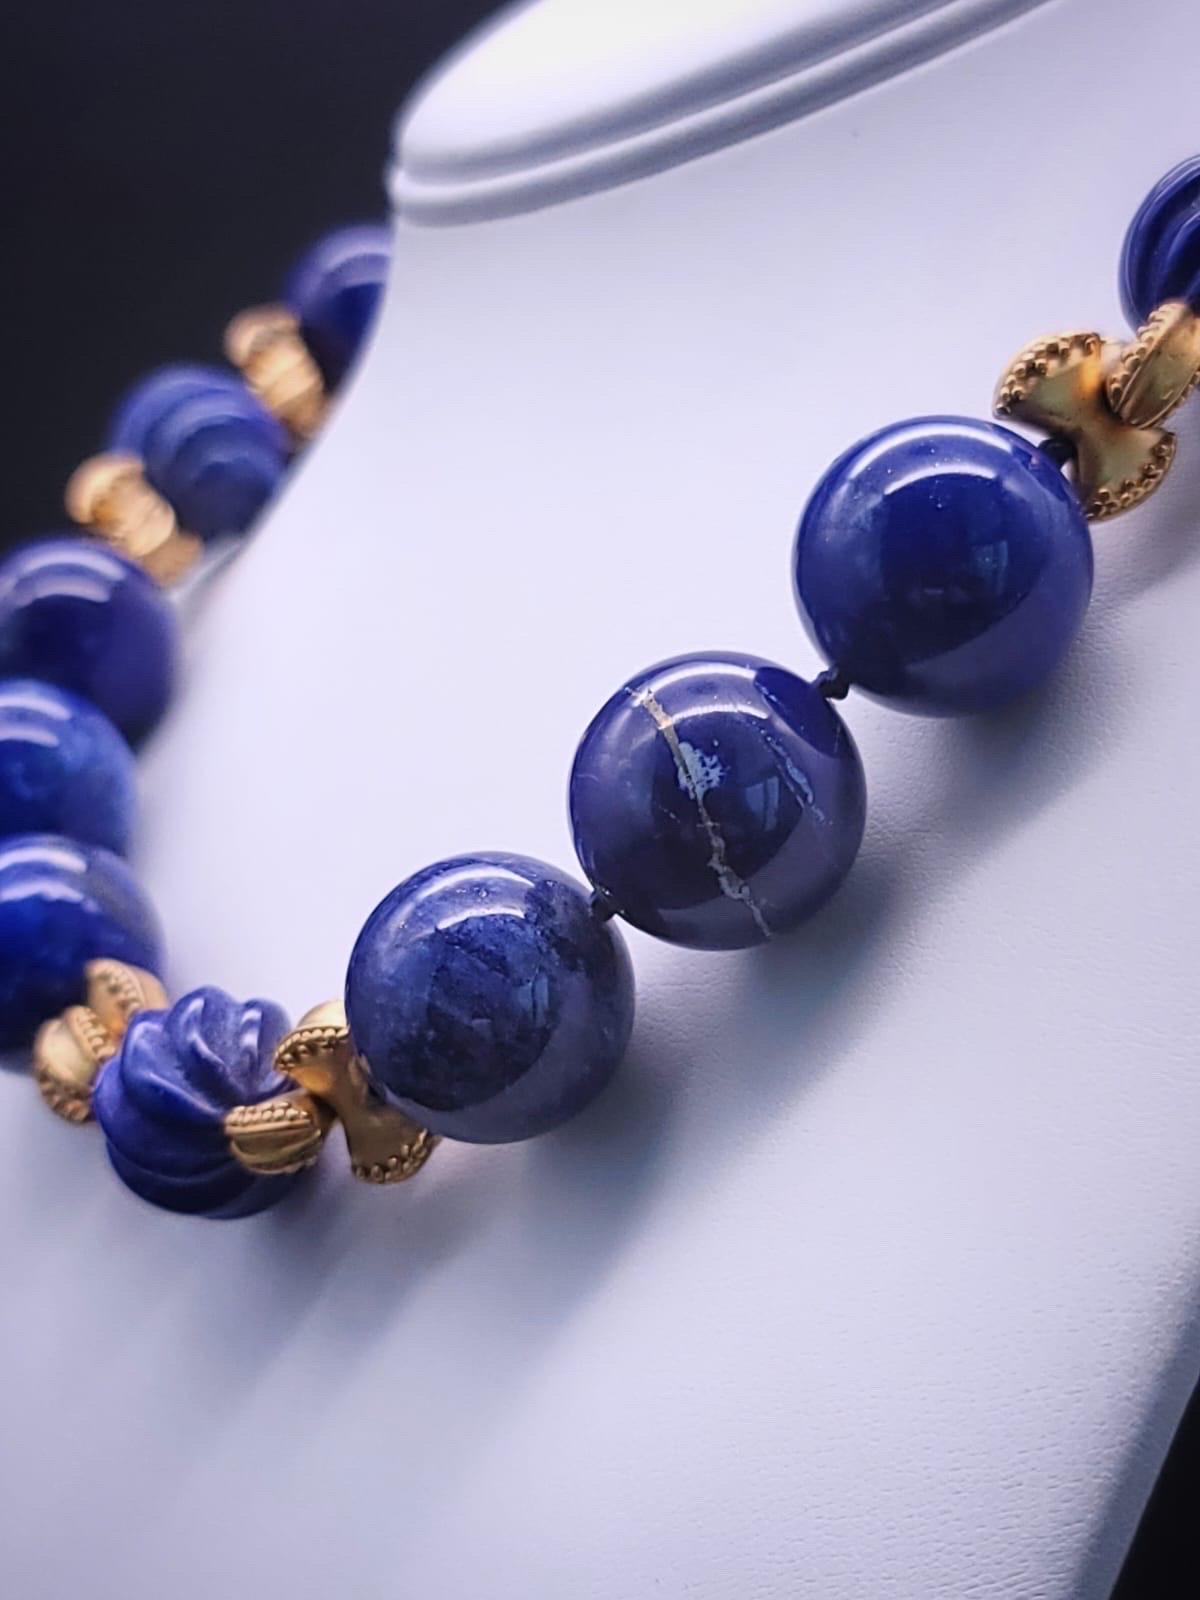 A.Jeschel Large Lapis Lazuli with vermeil knots necklace. 3